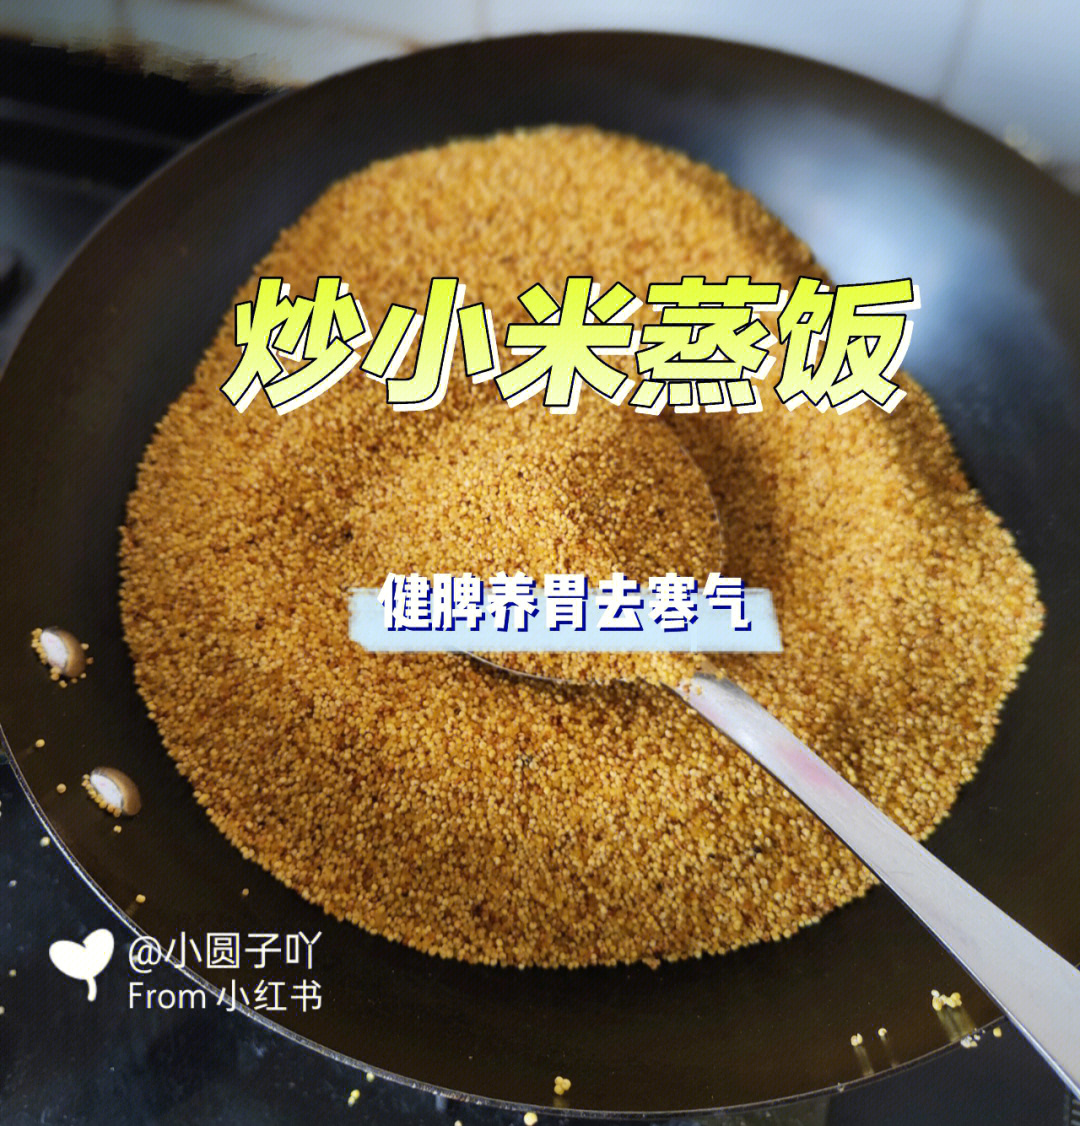 都可以试试这个炒小米蒸饭做法很简单,小米洗干净控干水分文火入锅炒